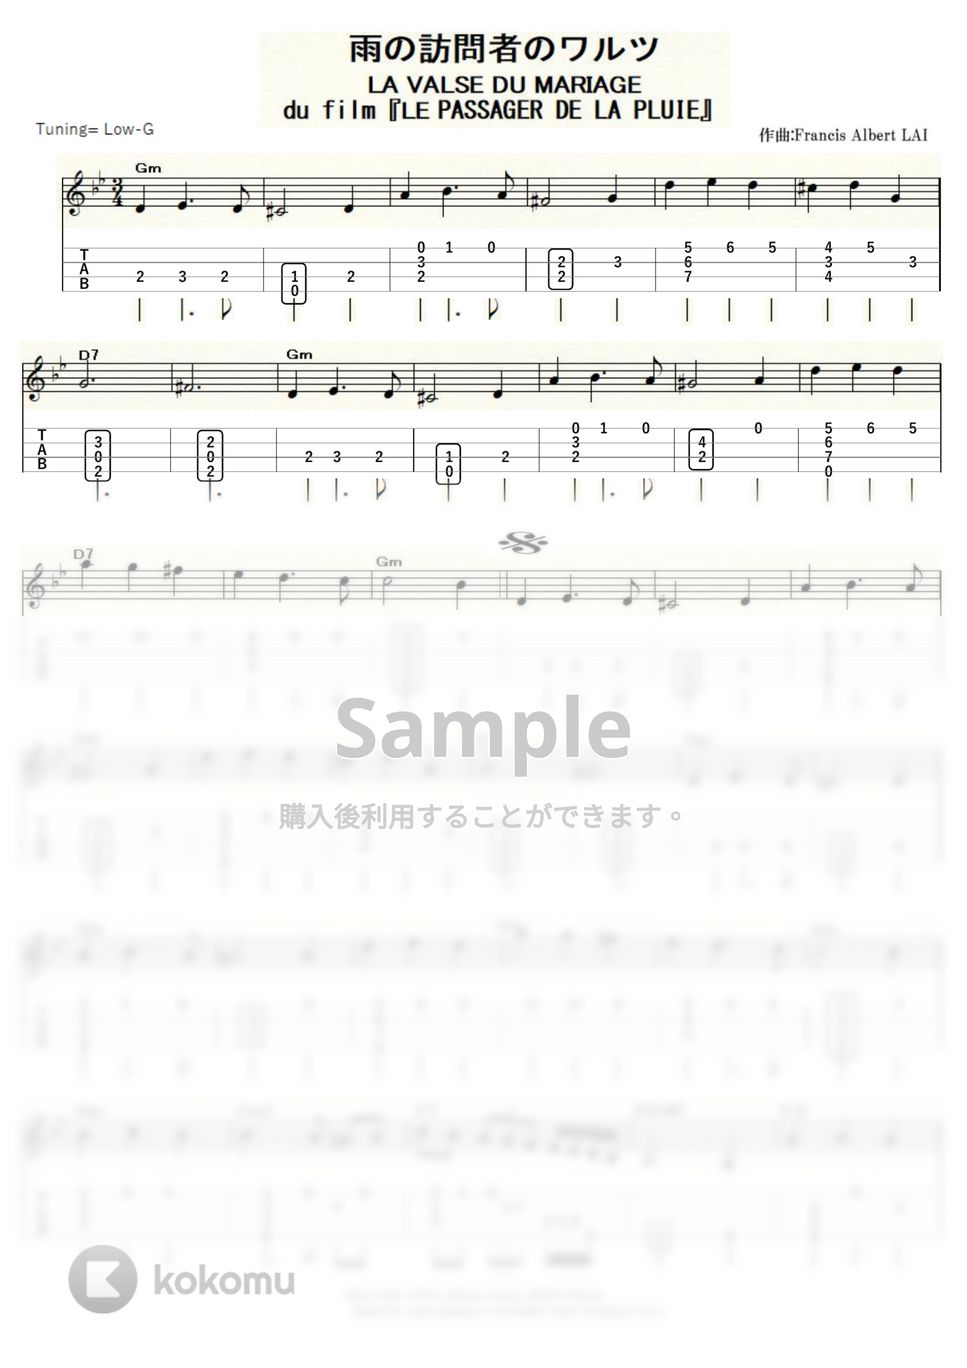 雨の訪問者 - 雨の訪問者のワルツ (ｳｸﾚﾚｿﾛ / Low-G / 中級) by ukulelepapa